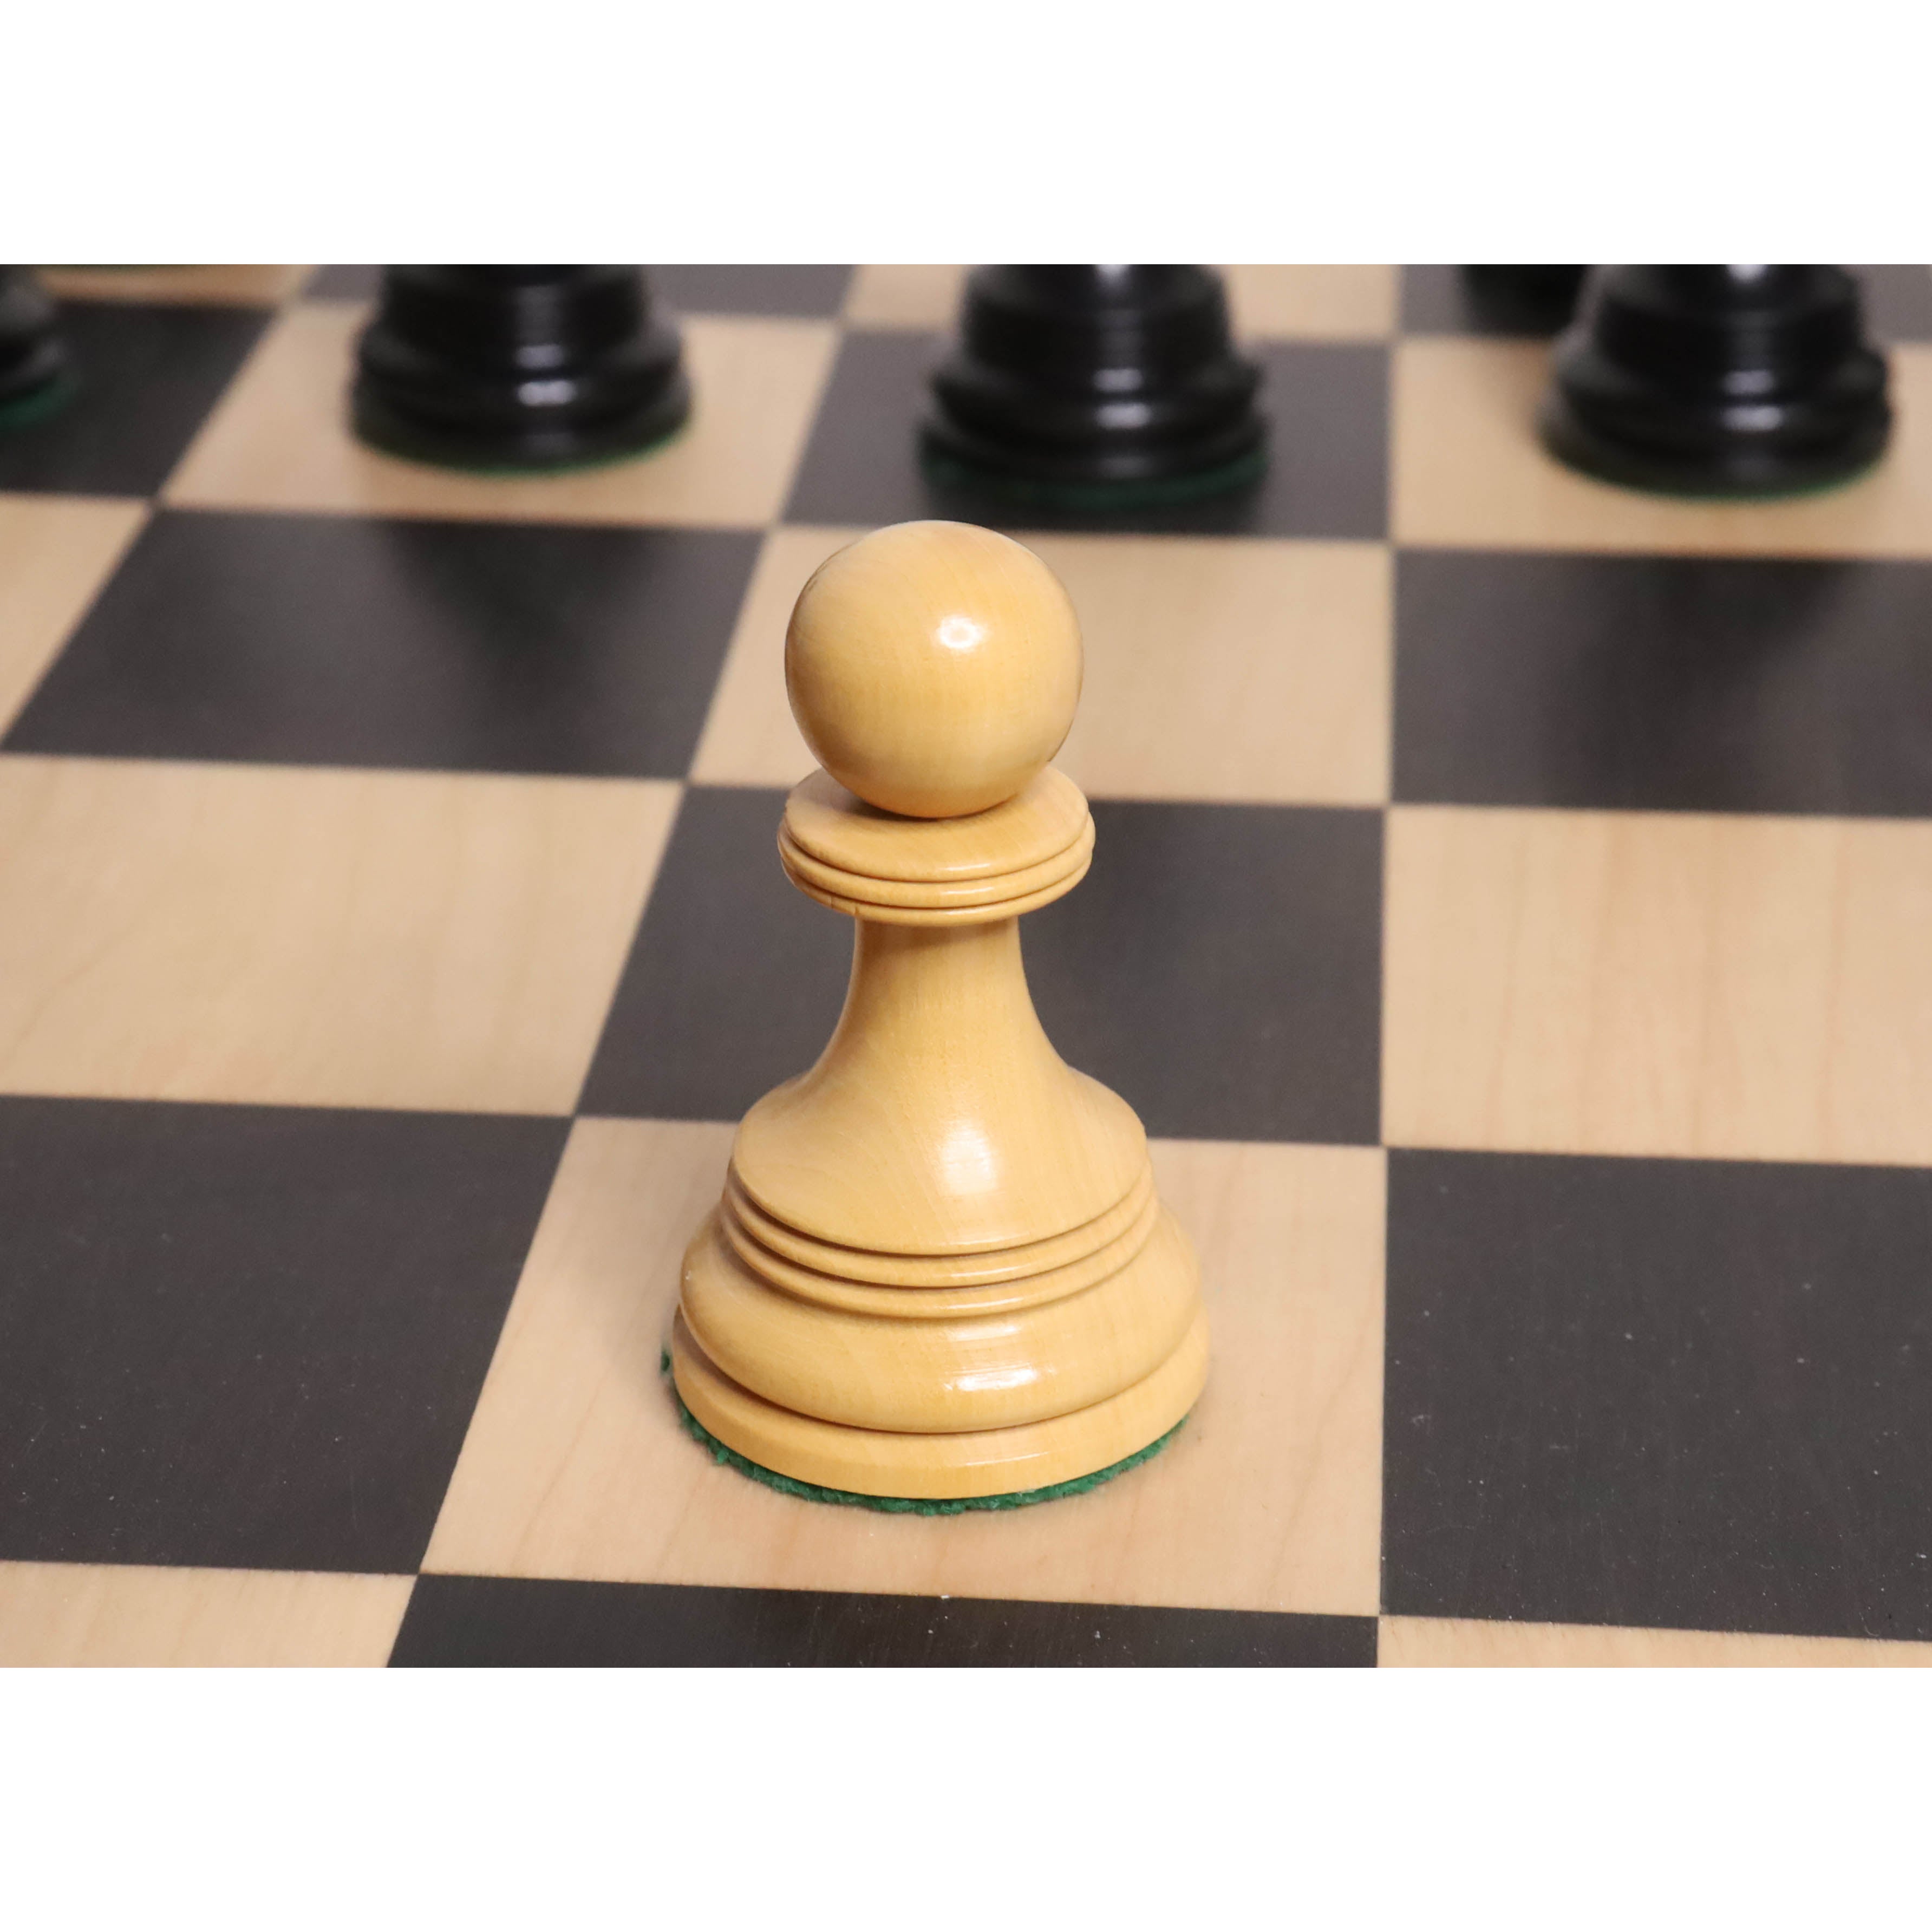 A&A Piezas de ajedrez de madera Staunton con peso triple premium con 2  extra Queen – Altura King 3 pulgadas/3.0 in